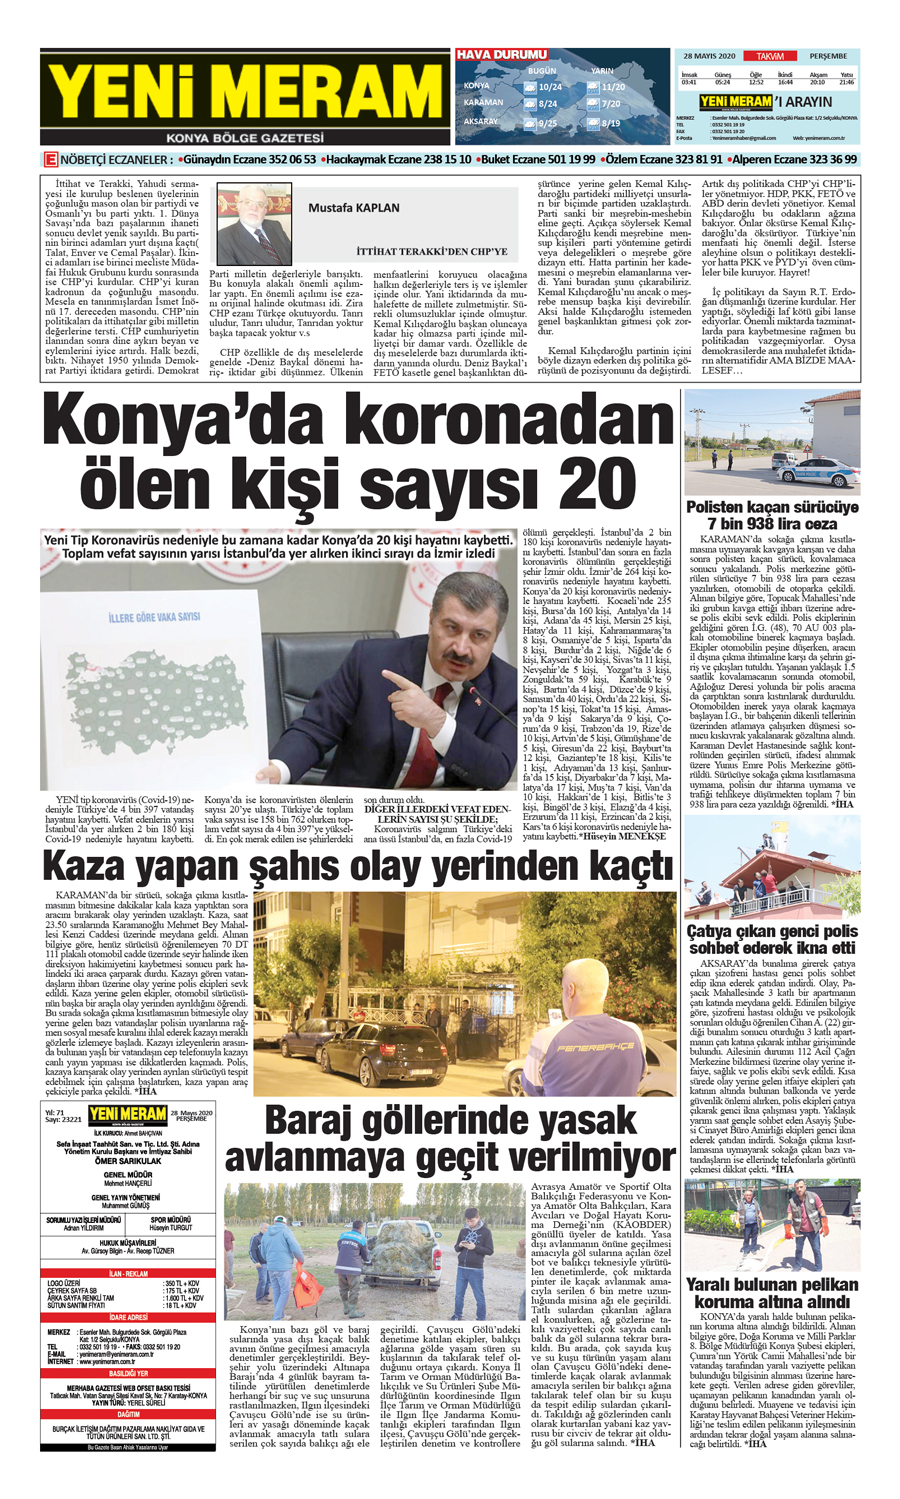 28 Mayıs 2020 Yeni Meram Gazetesi